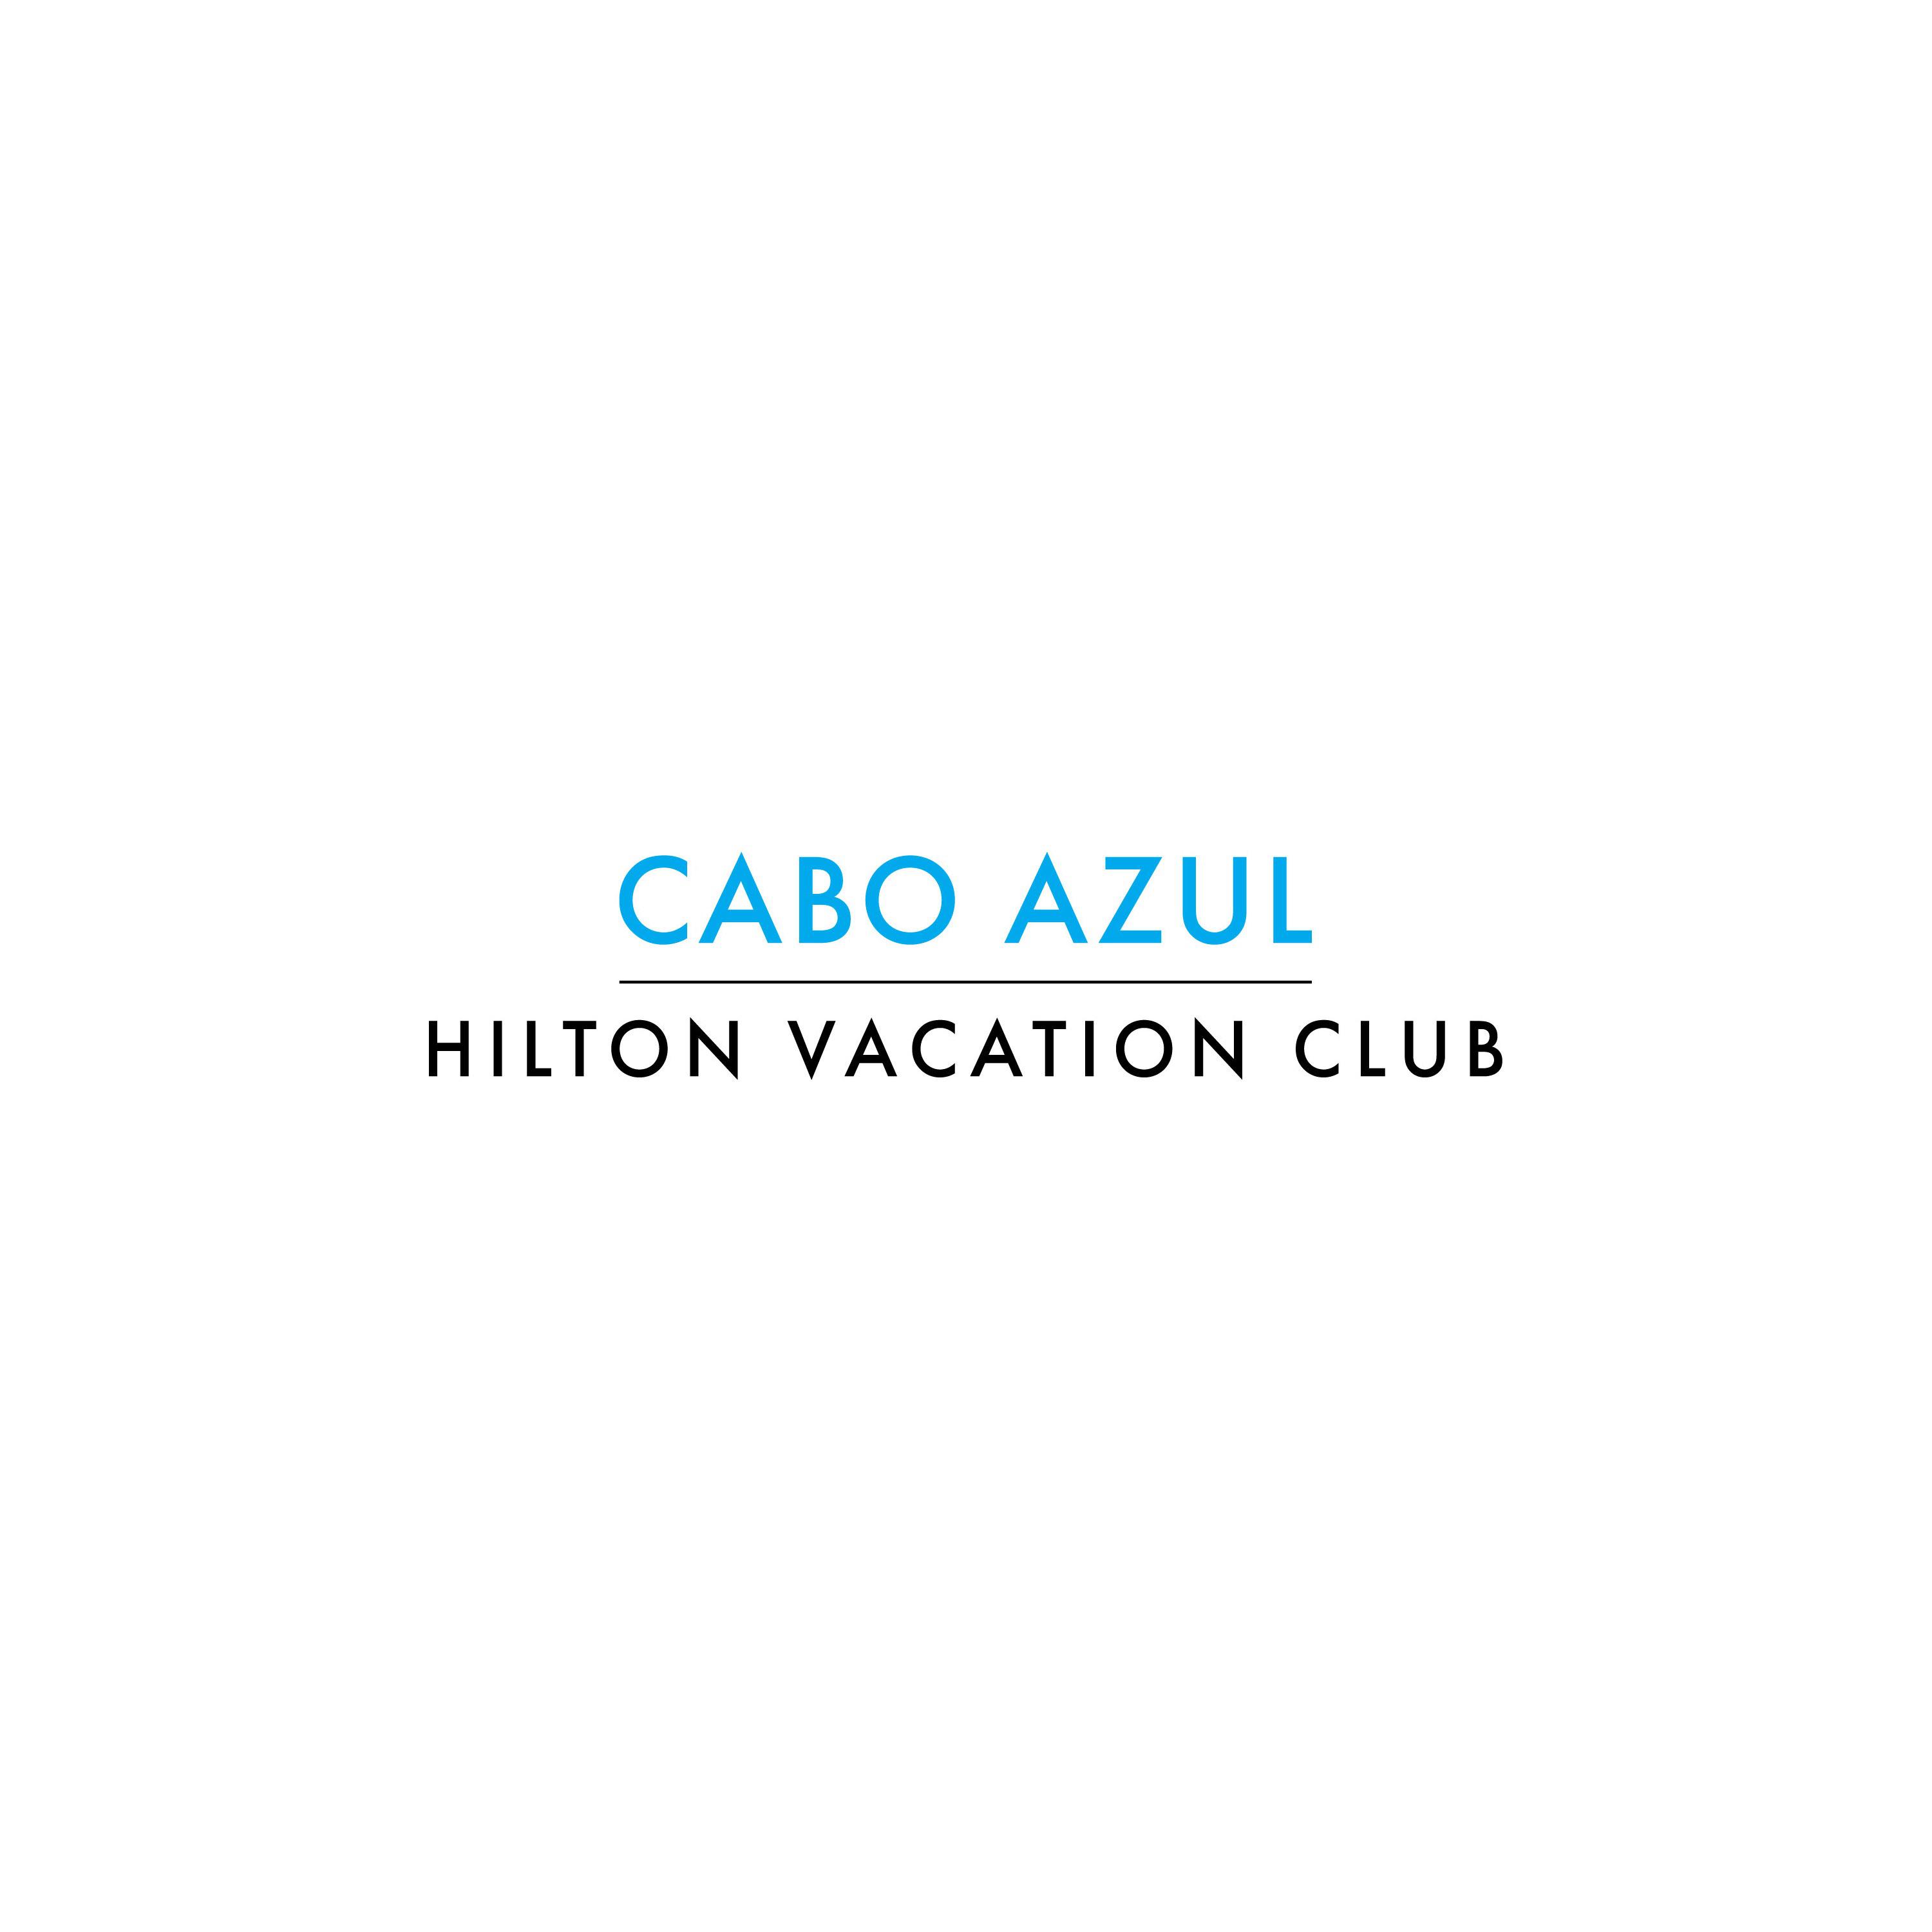 Hilton Vacation Club Cabo Azul Los Cabos Logo